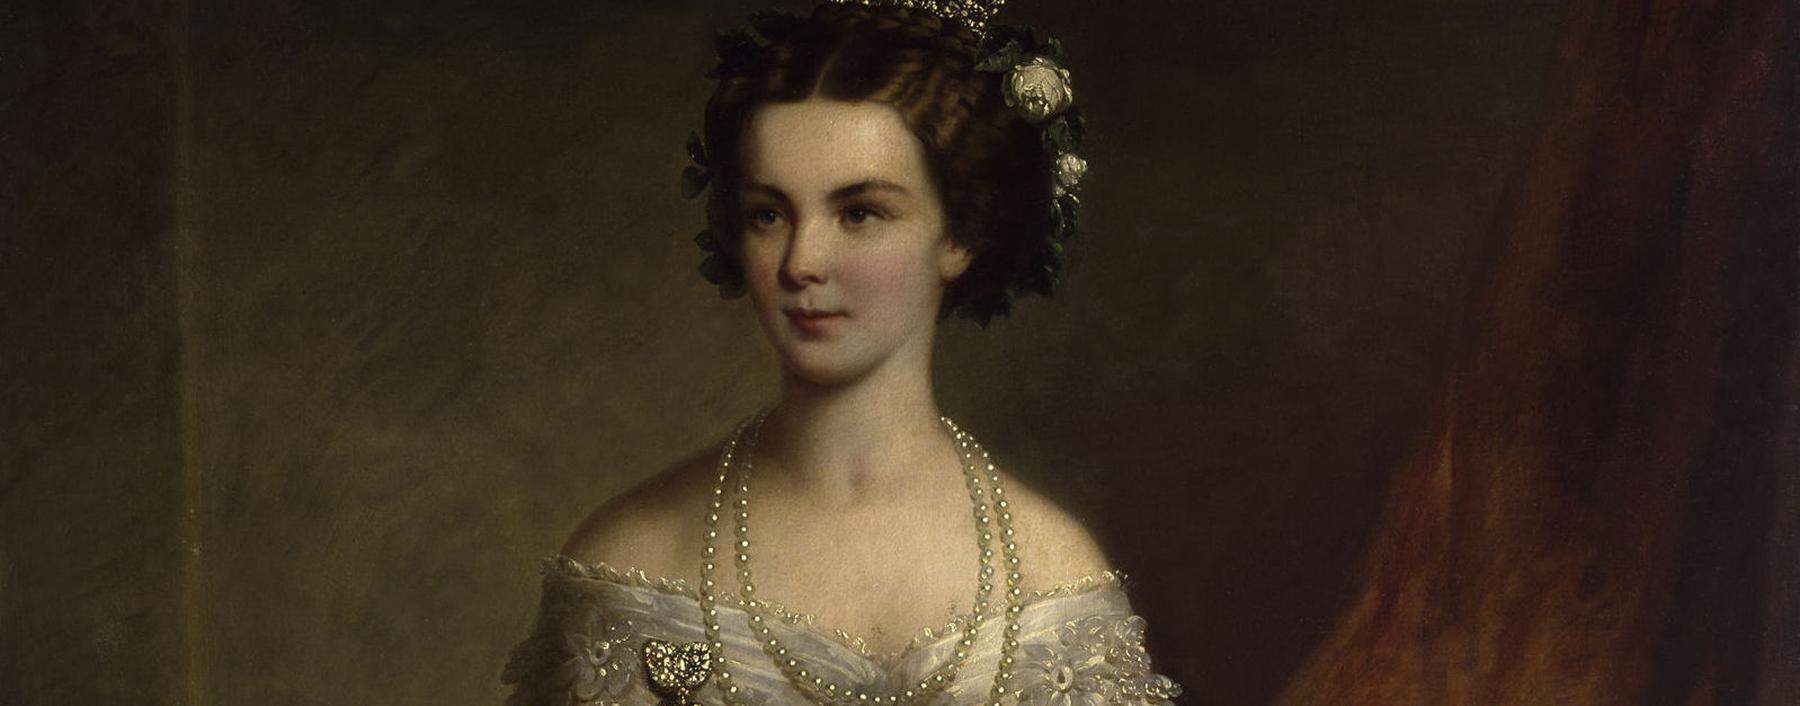 Das Gemälde zeigt die wittelsbachische Prinzessin Elisabeth im Jahr 1854.